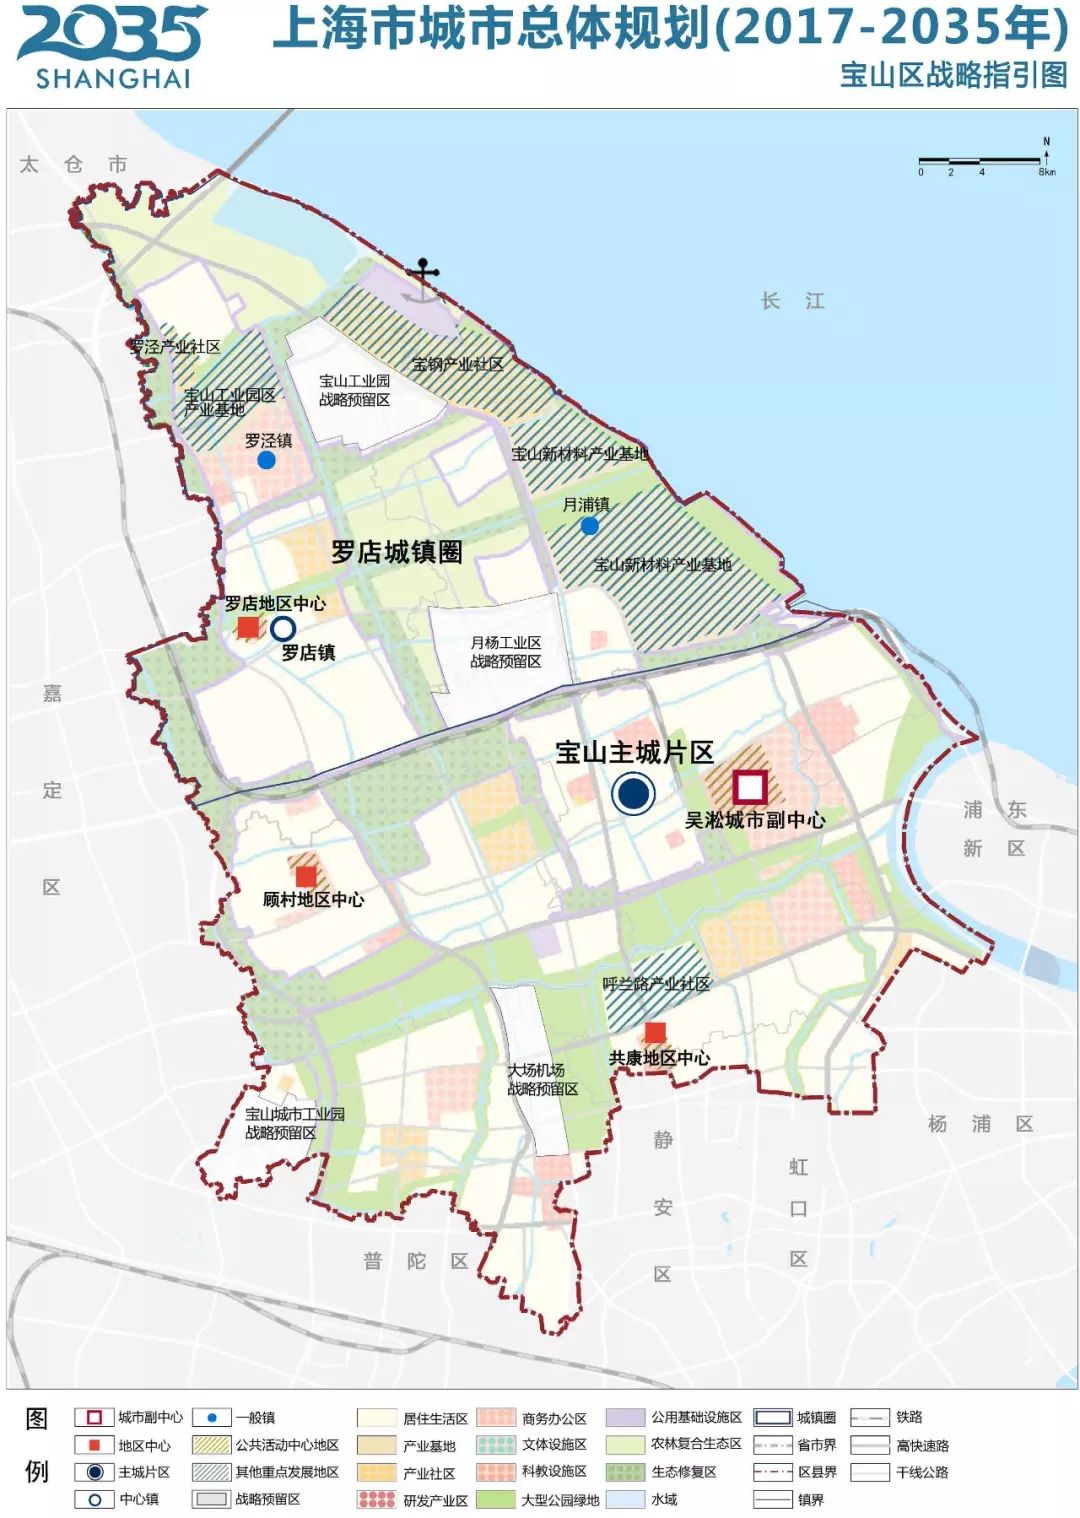 这一区域也是之前公布的上海市城市总体规划(2017-2035)中提到的顾村